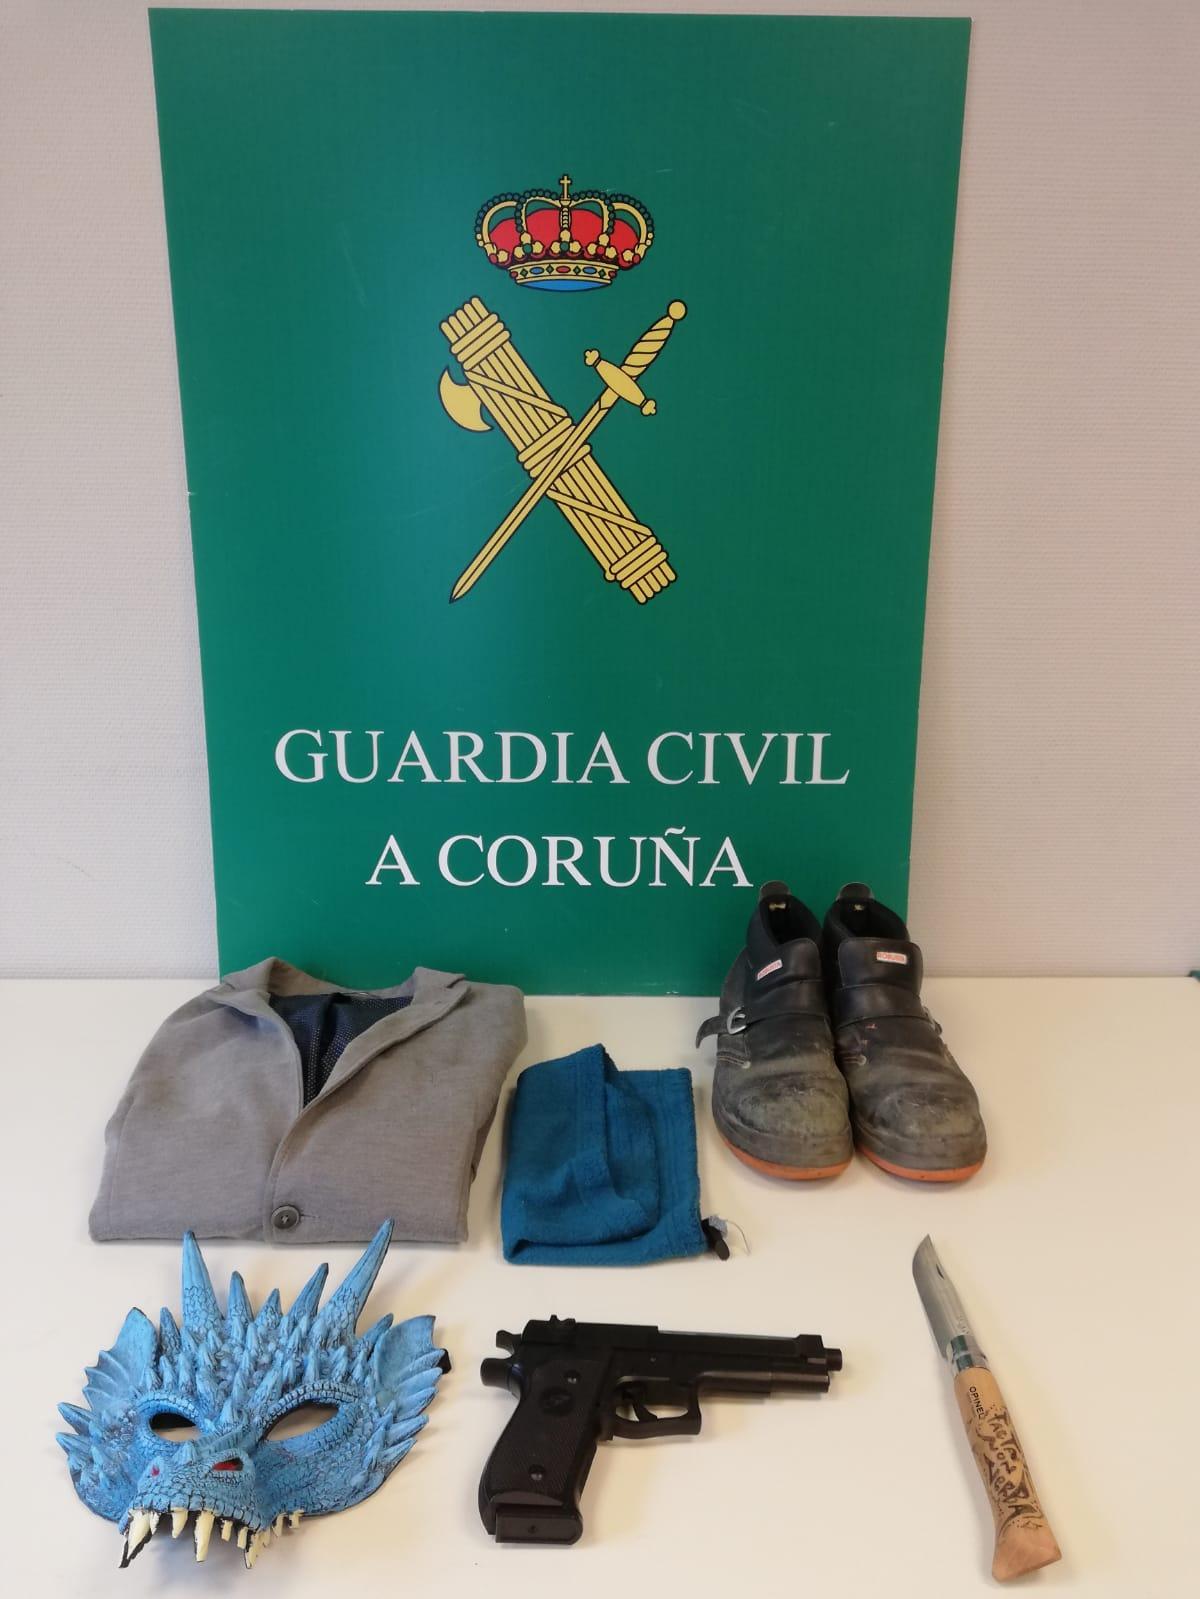 La indumentaria y el arma de fuego falsa, hallados por la Guardia Civil en el domicilio del detenido.